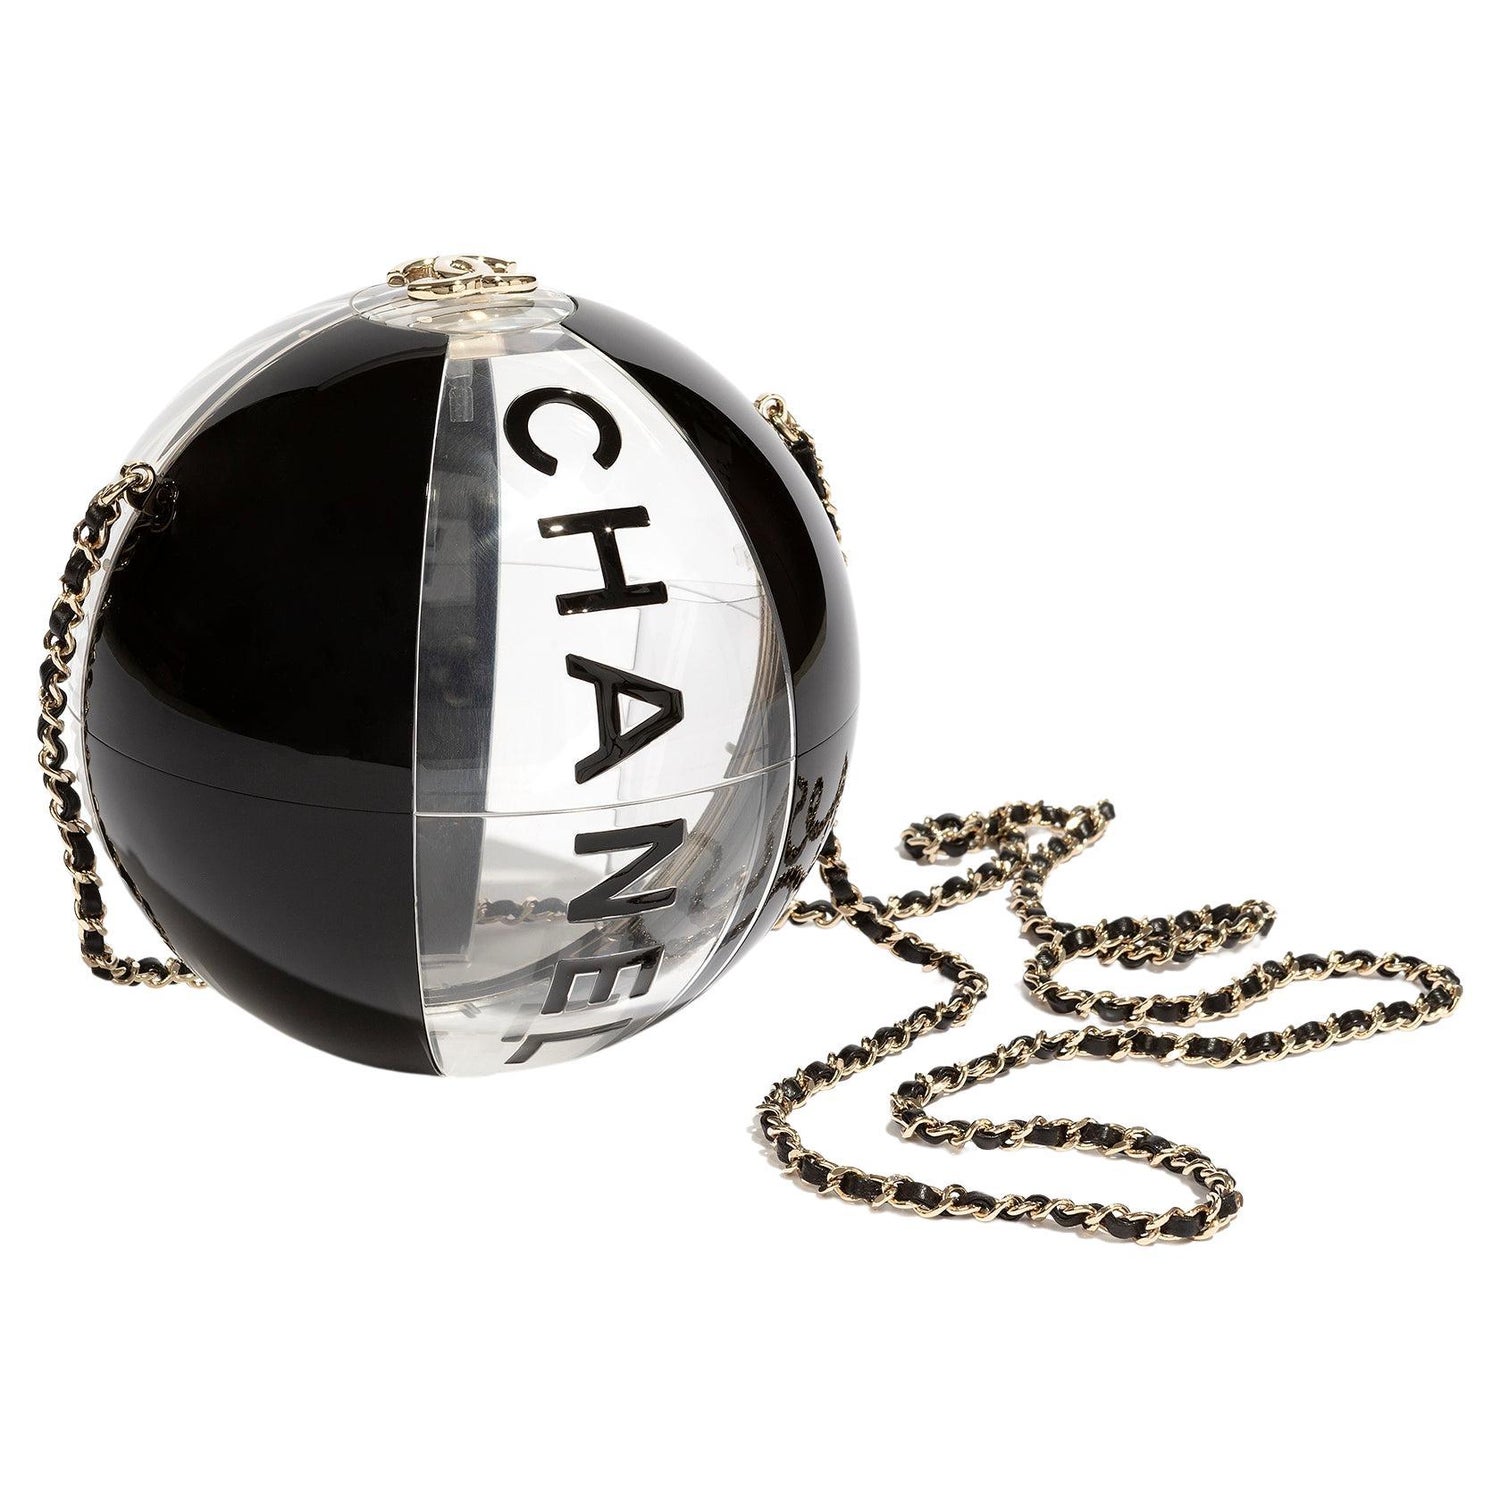 Chanel Beach Ball Bag - 2 For Sale on 1stDibs